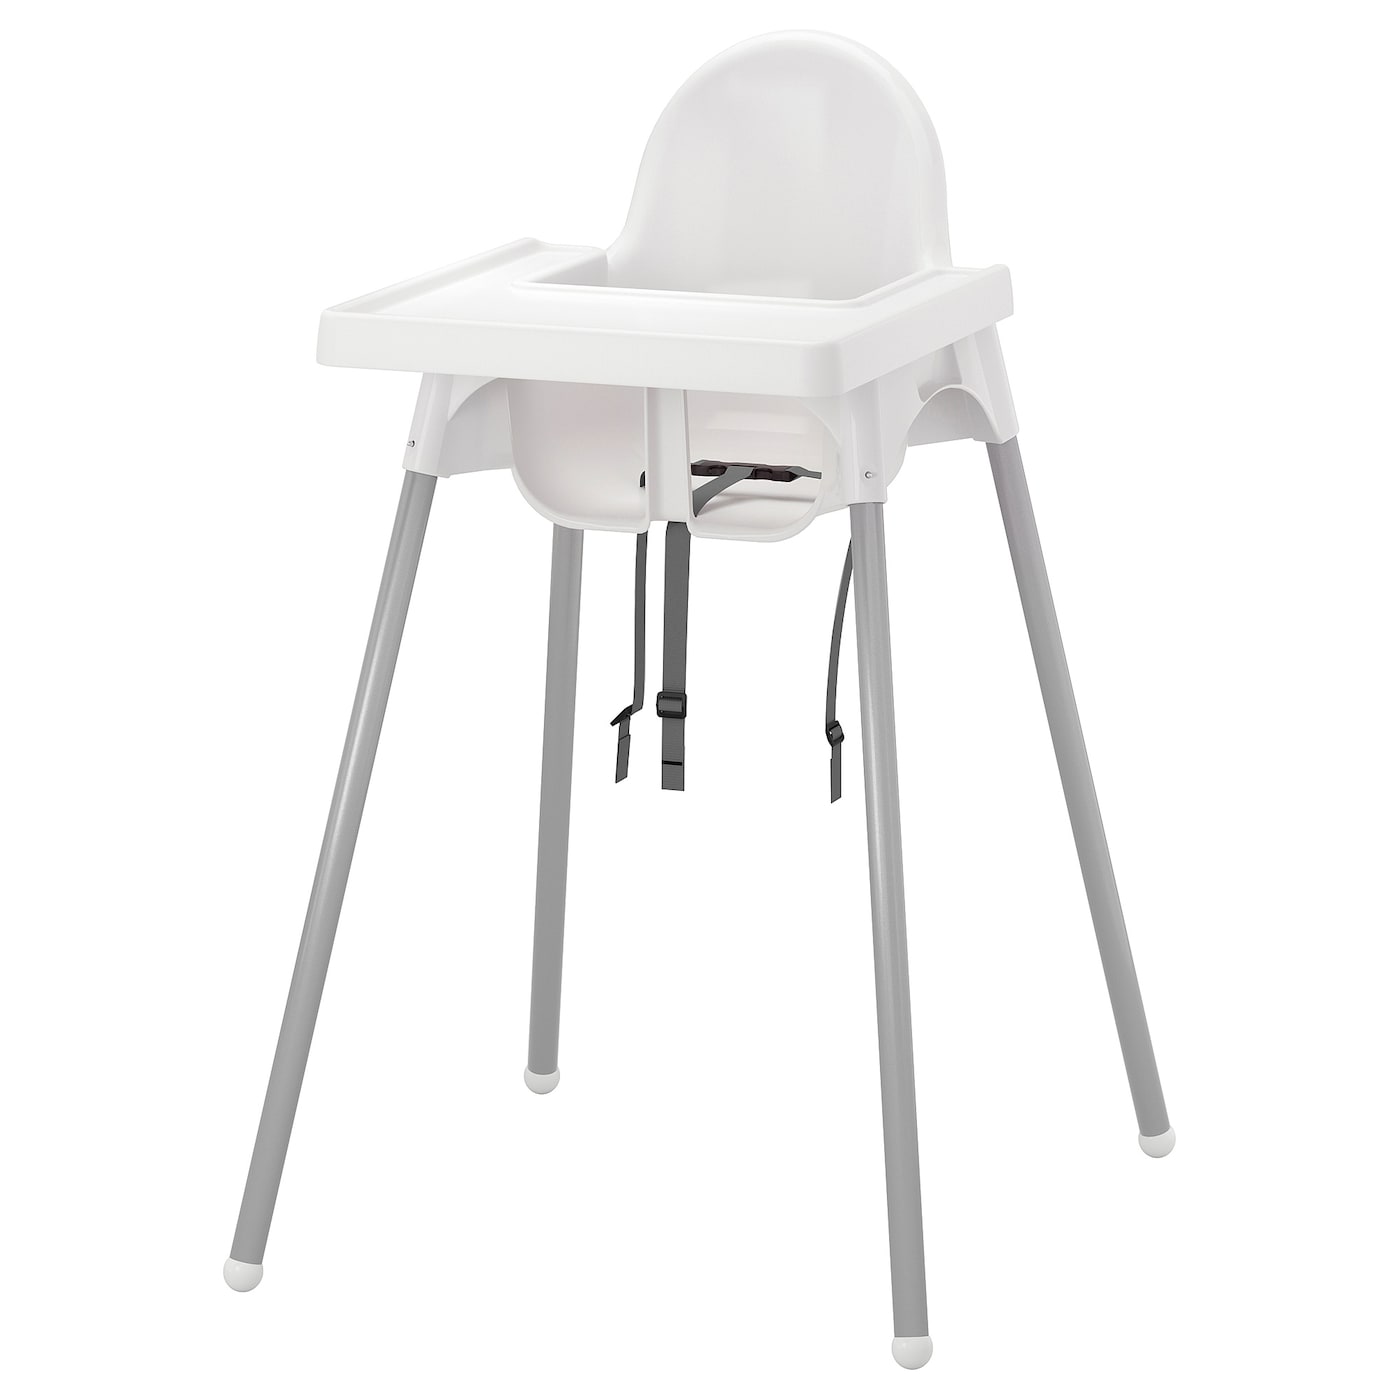 Стульчик для кормления с подносом - IKEA ANTILOP/АНТИЛОП ИКЕА, 90 см, белый